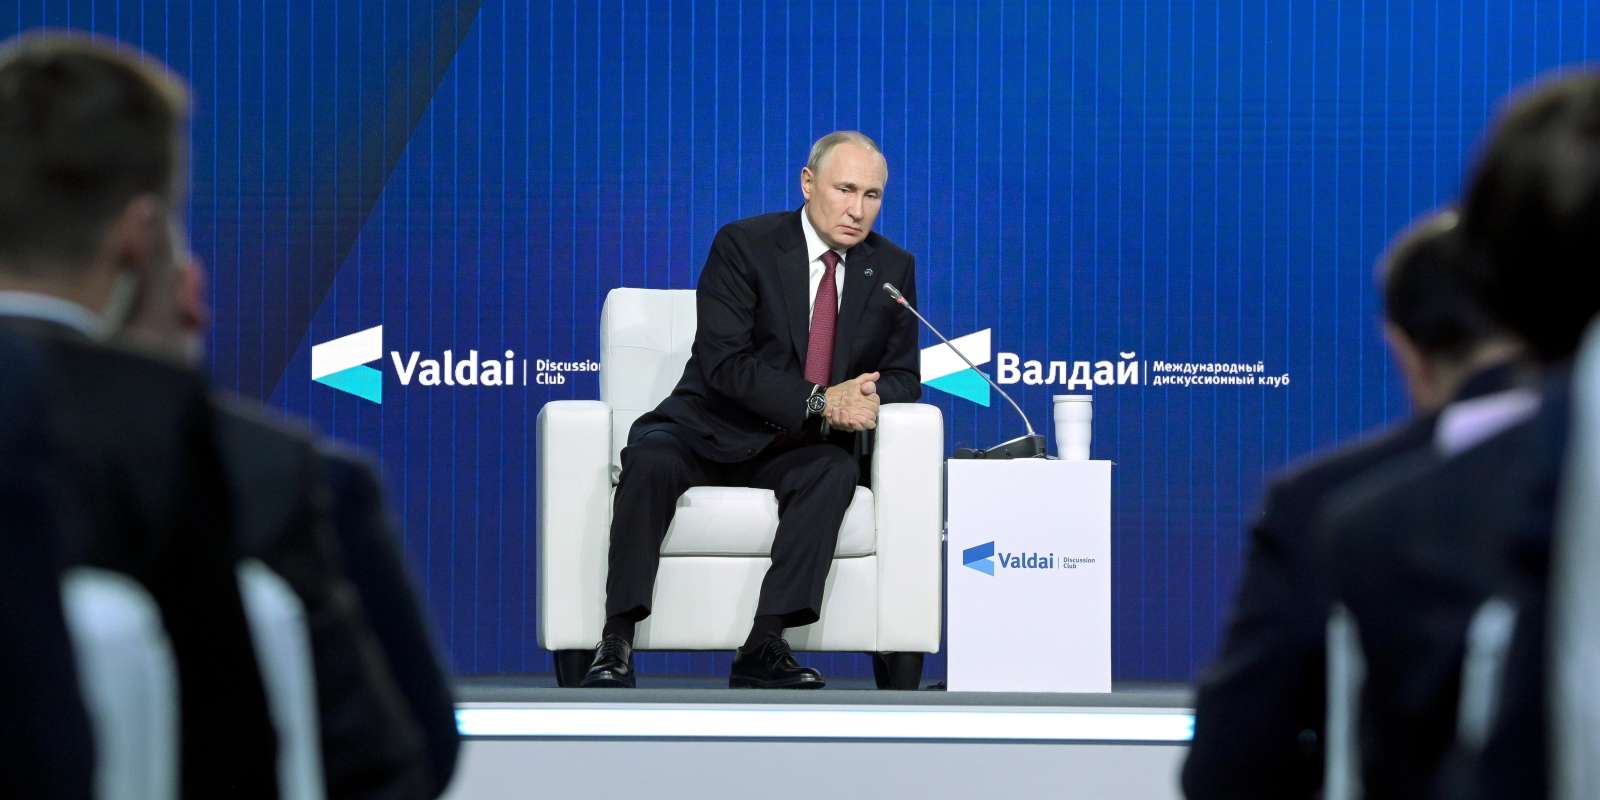 Au forum de Valdaï, Poutine défend la création d’un nouveau système monétaire international